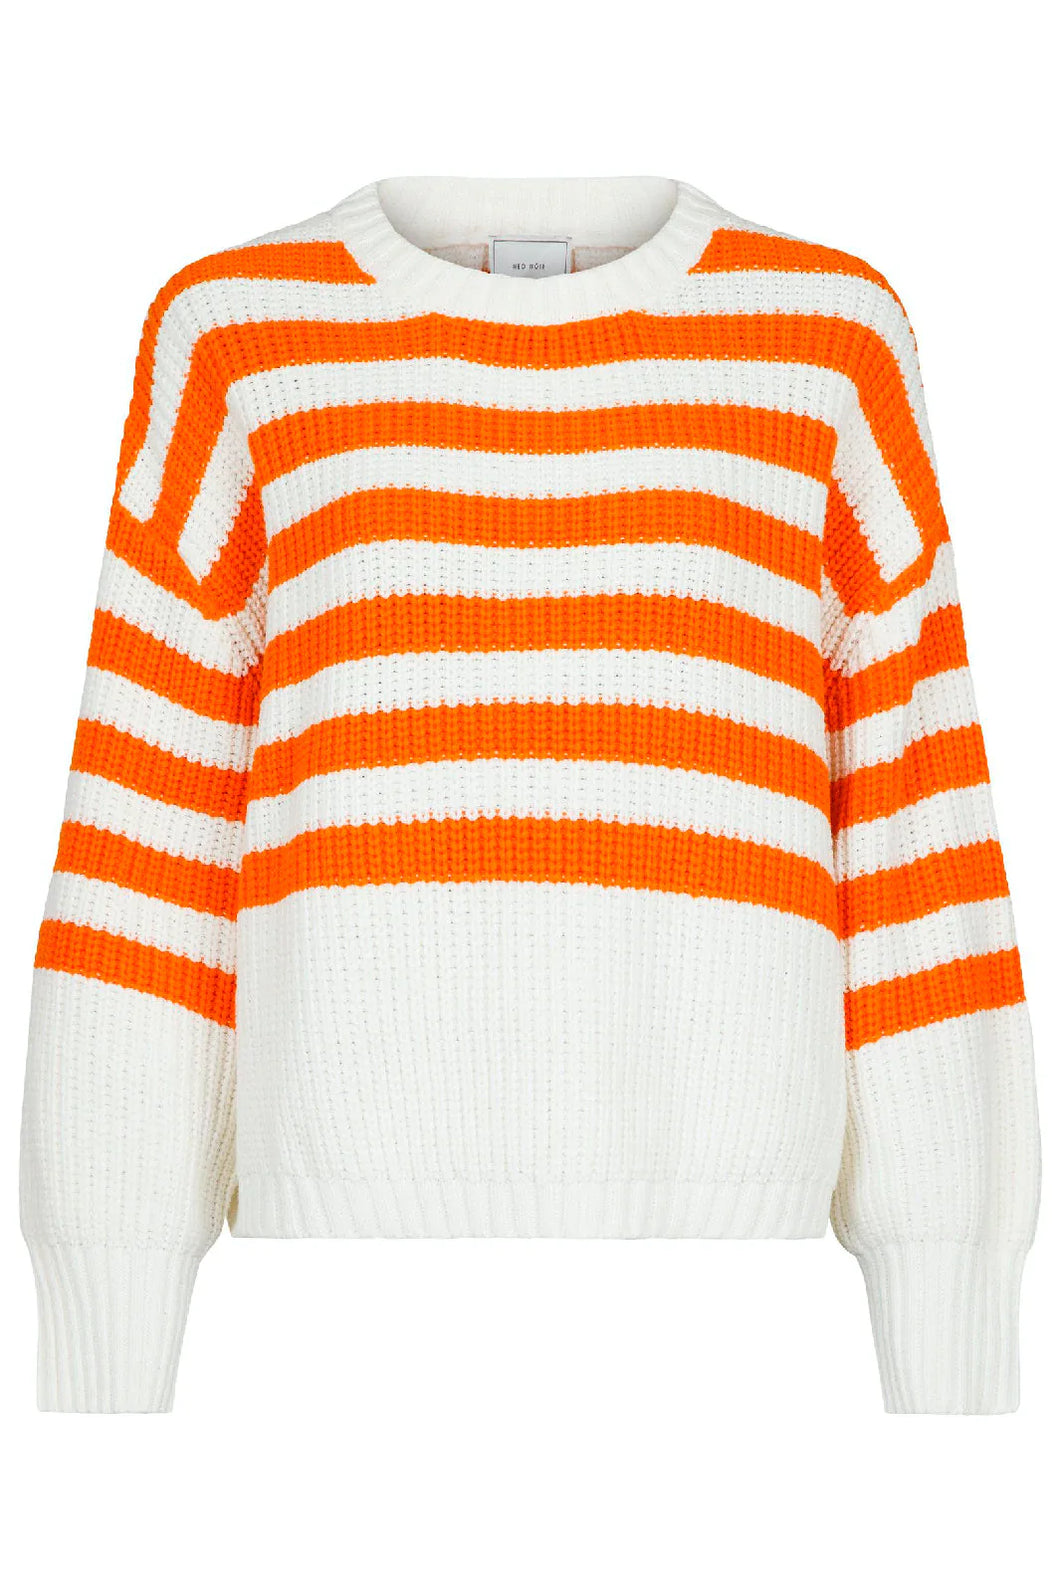 Dakota stripe knit blouse